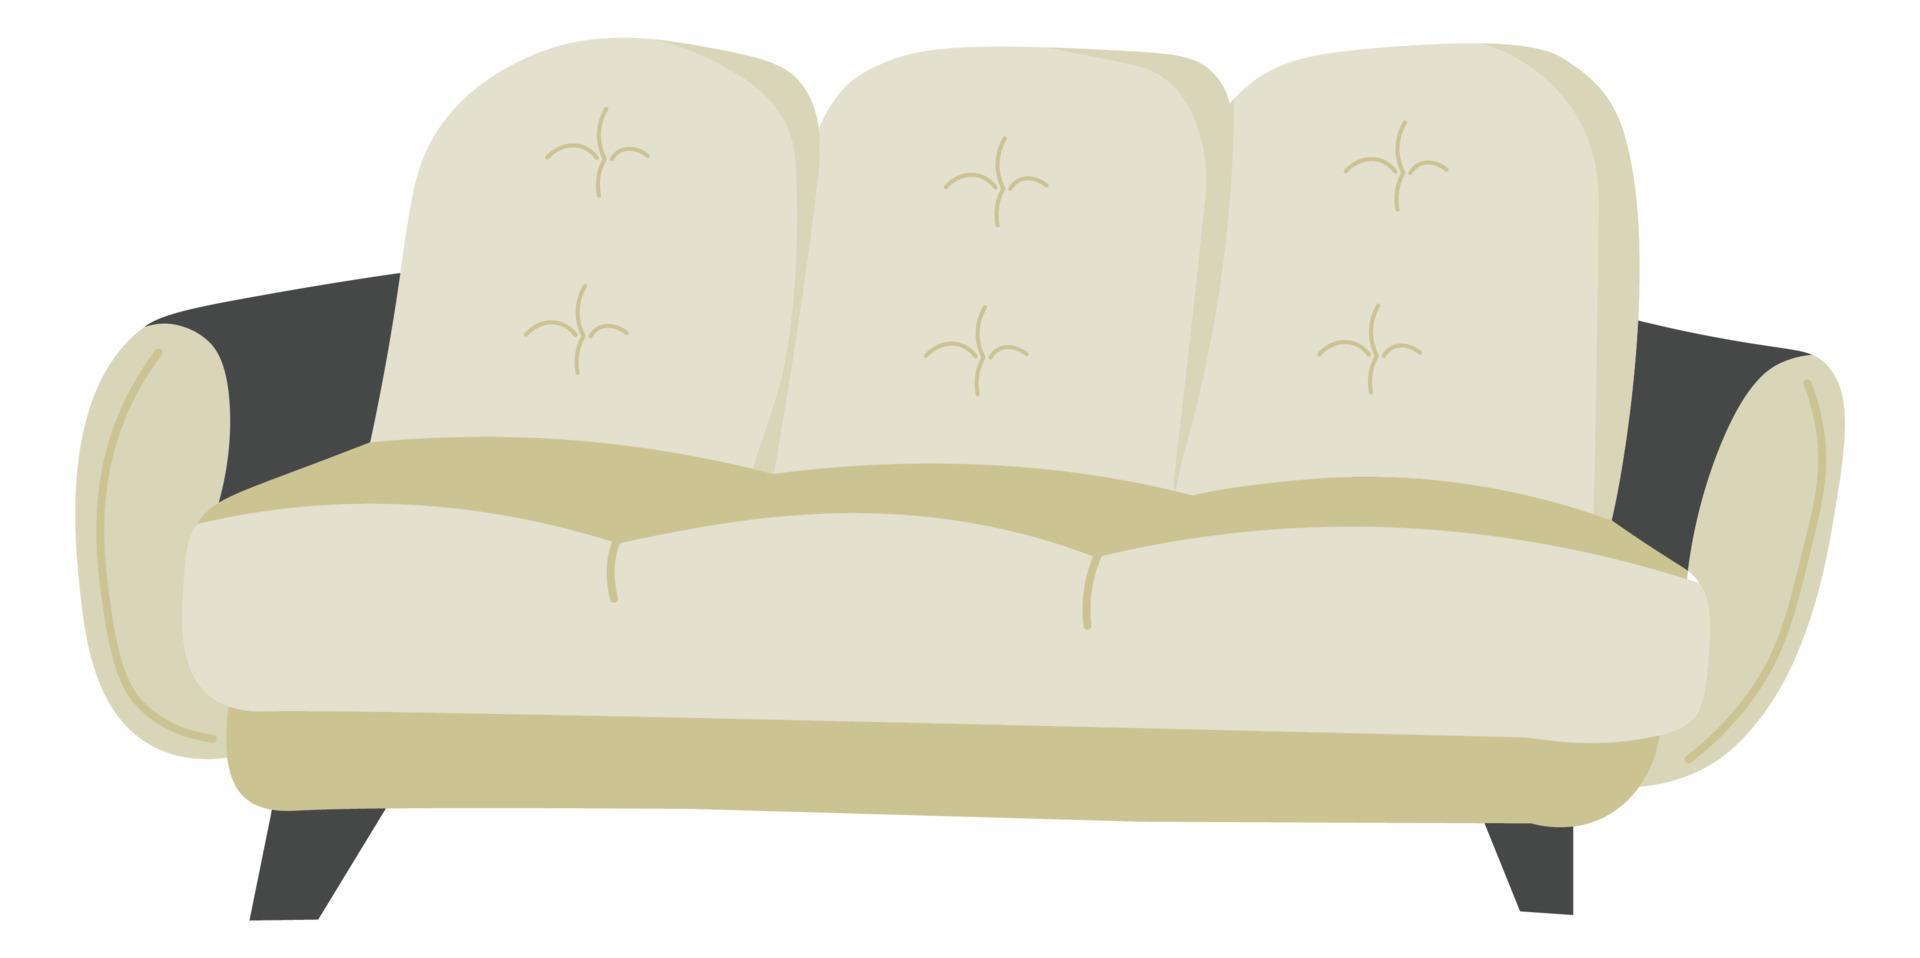 Sofa aus weichem Stoff, minimalistisches Möbeldesign vektor